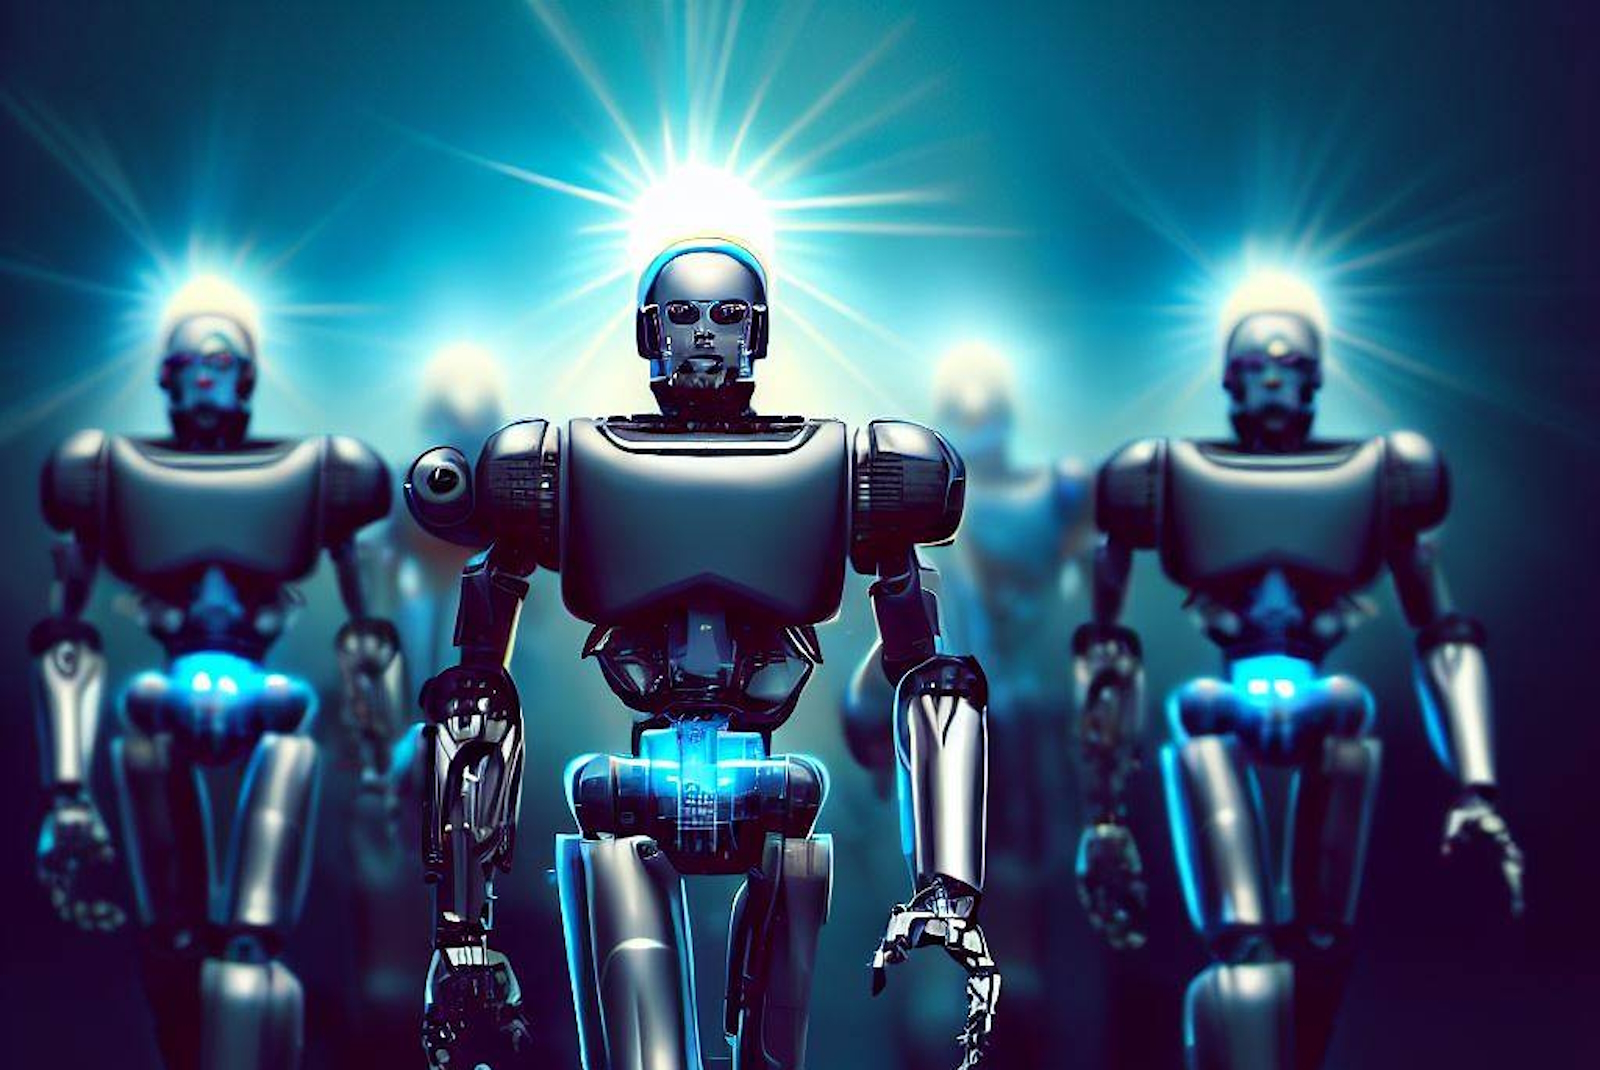 Des robots qui dirigent le monde. Est-ce une bonne idée ? © Sylvain Biget, Bing Image Creator